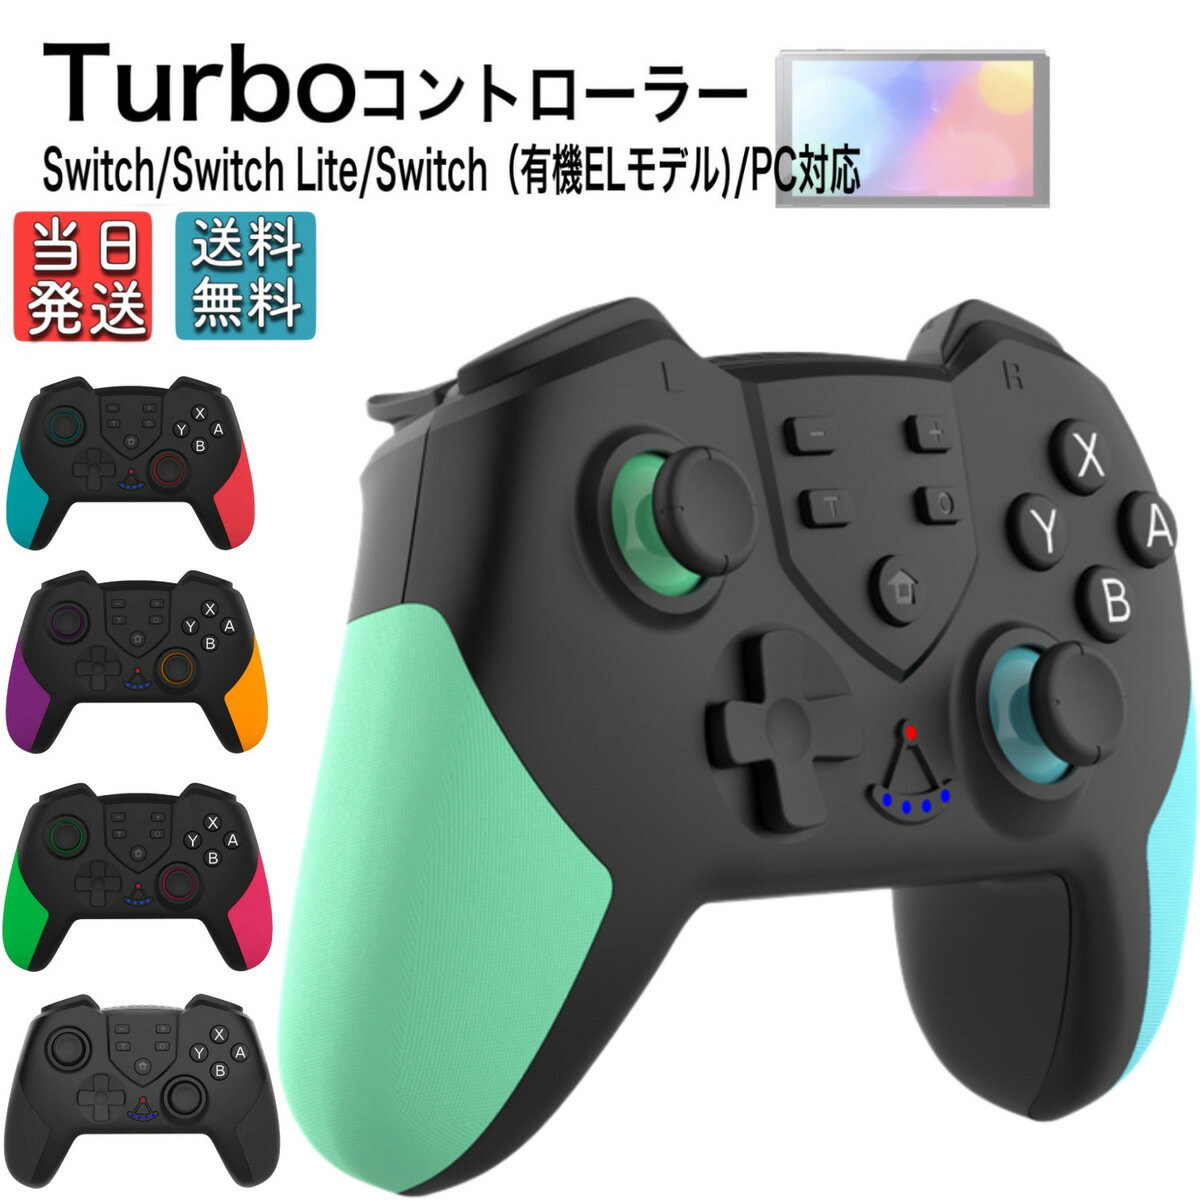 【クーポン配布中】Switch コントローラー 5色カラー OLED Lite PC 対応 プロコン交換 振動 スイッチ ワイヤレス ジャイロセンサー TURBO機能 プロコン switch